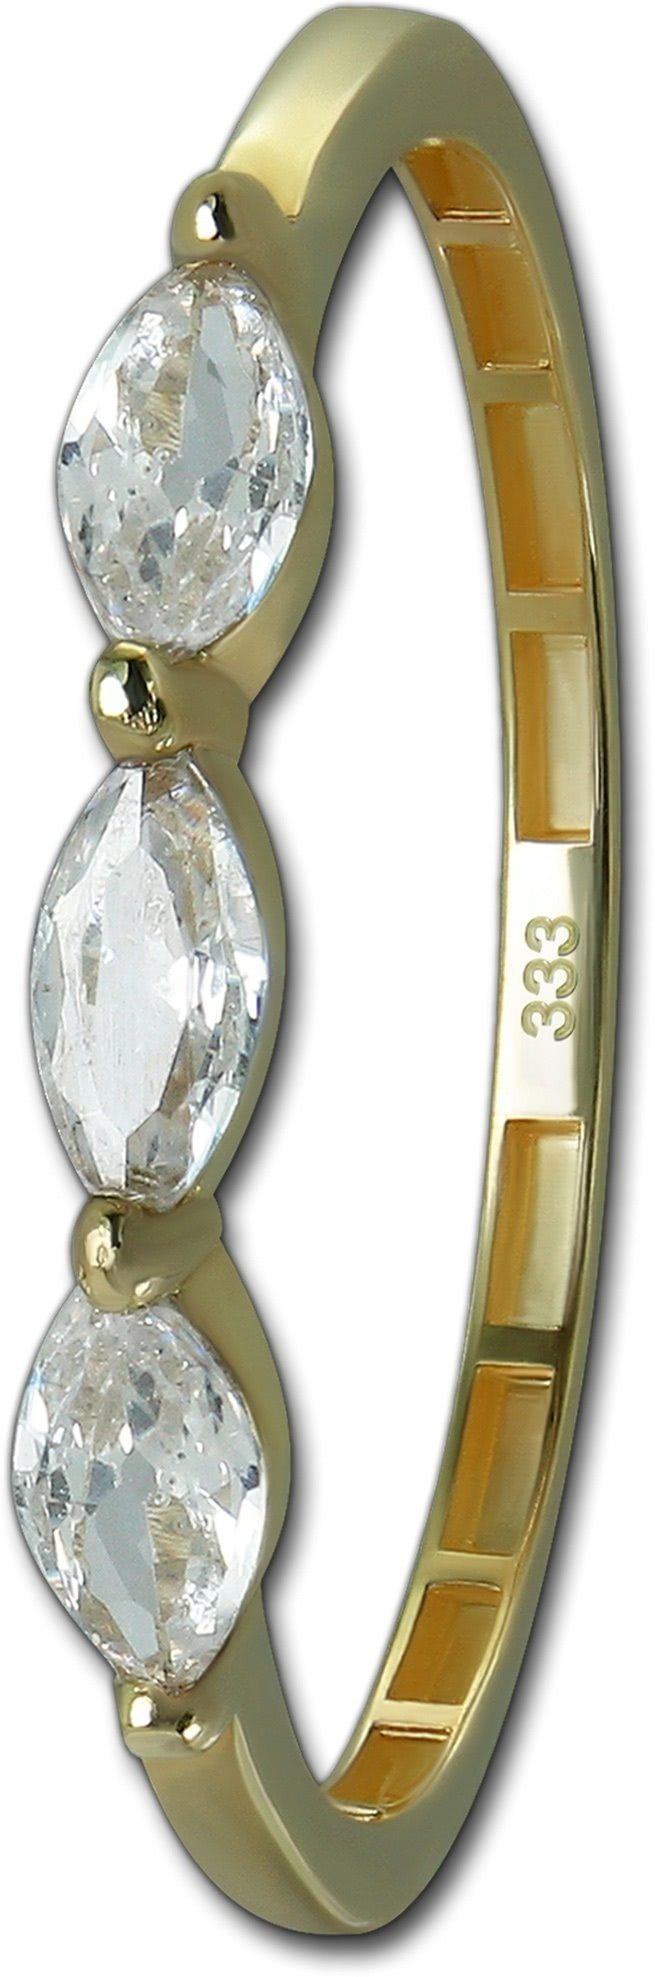 GoldDream Goldring GoldDream Gold Ring Shine Gr.58 (Fingerring), Damen Ring Echtgold, 333er Gelbgold gold, weiß Shine